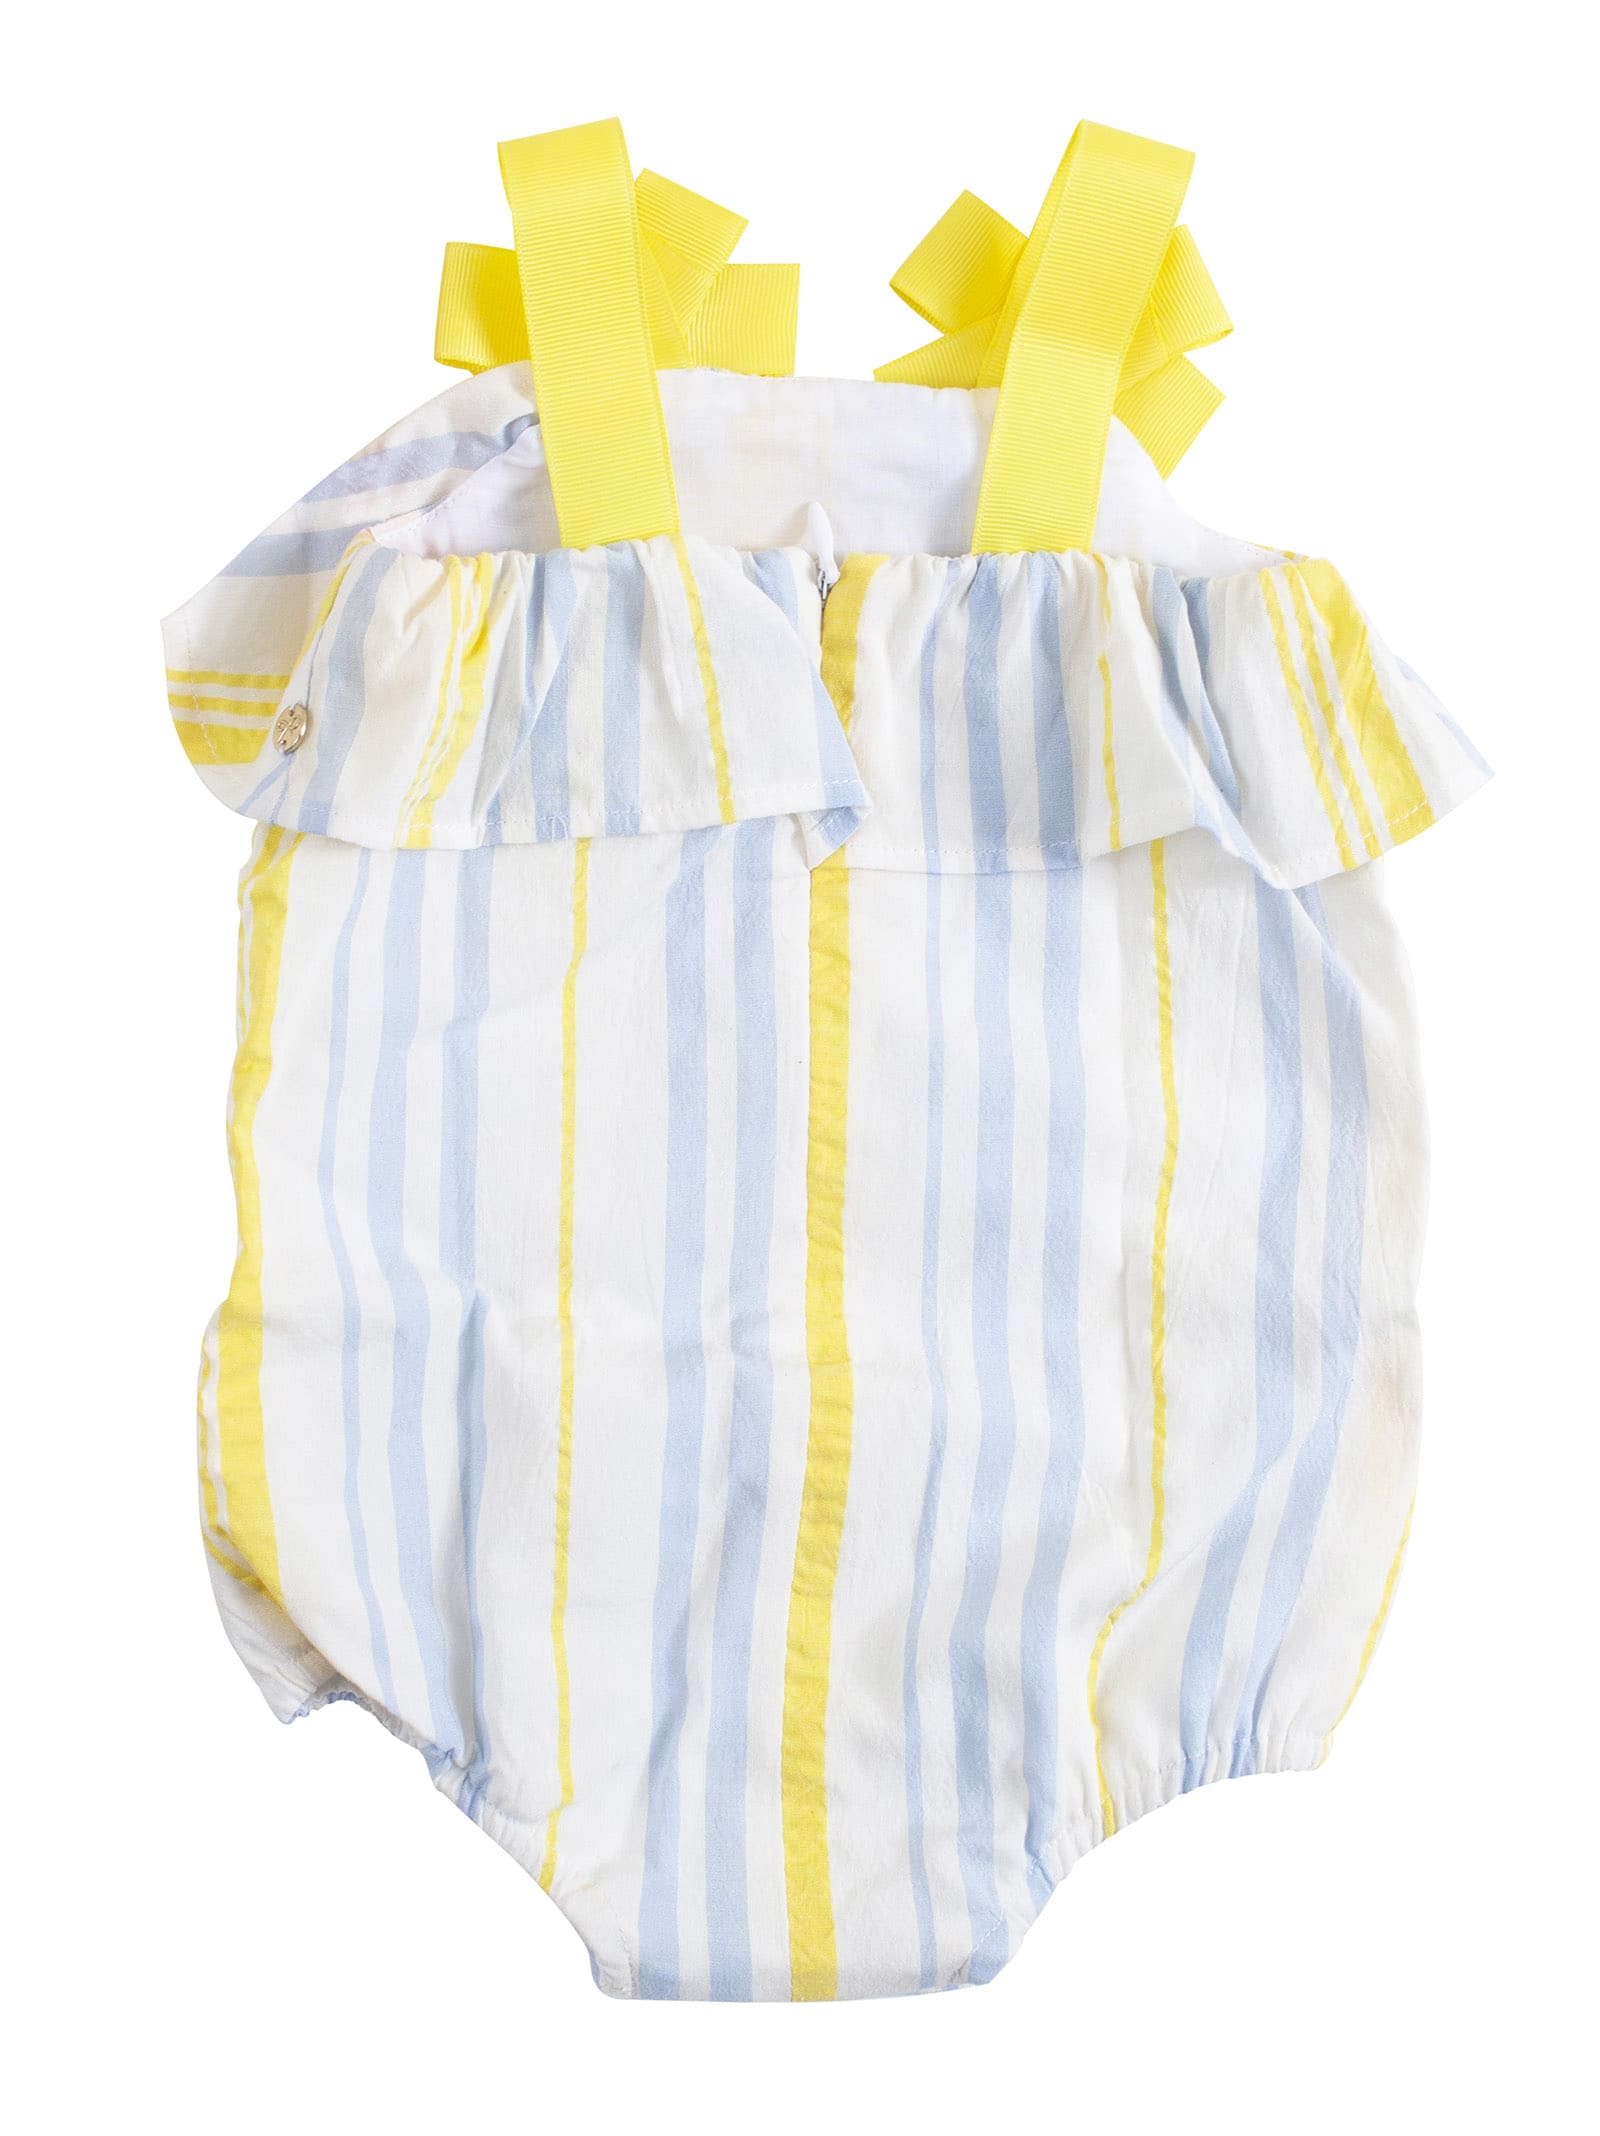 Lili Gaufrette Babies' Newborn Striped Romper In White